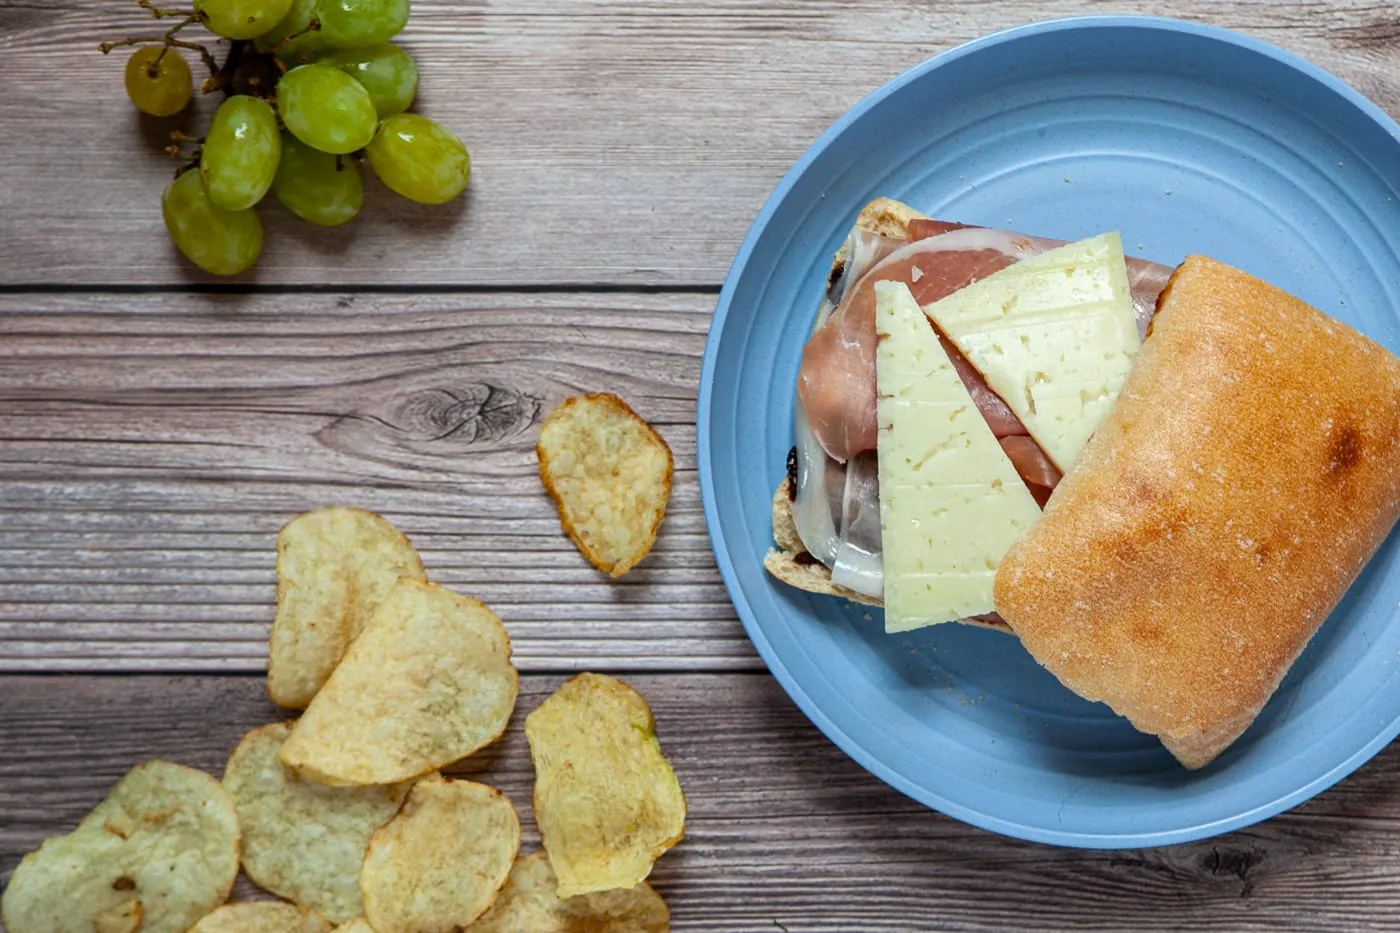 Road trip sandwiches - prosciutto, Manchego cheese, and fig jam sandwich on cheese sandwich on a ciabatta roll.